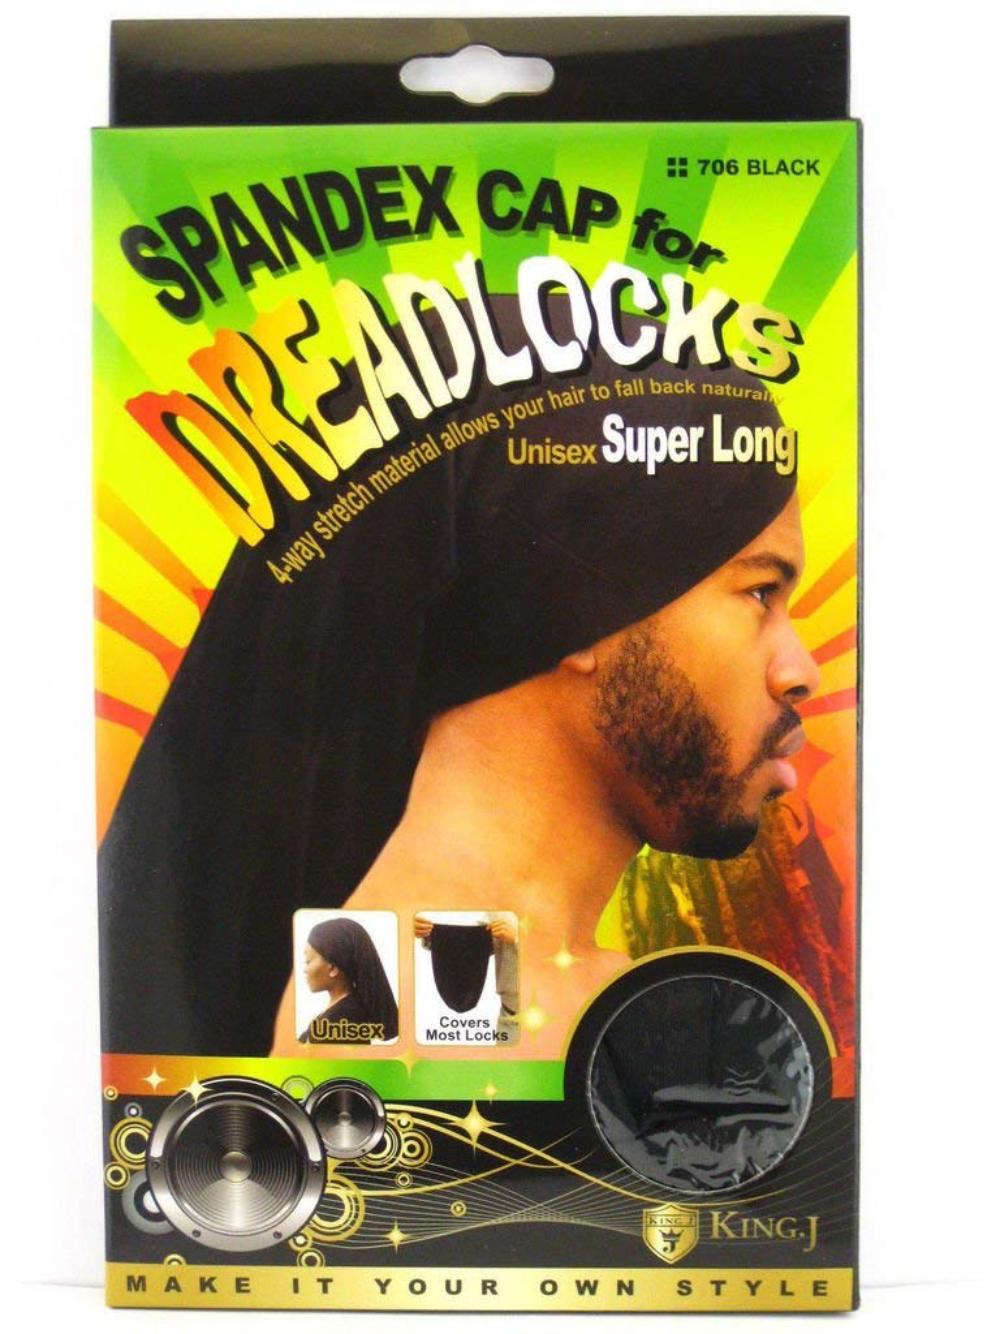 King. J Spandex Cap for Dreadlocks Unisex Super Long (705/706)